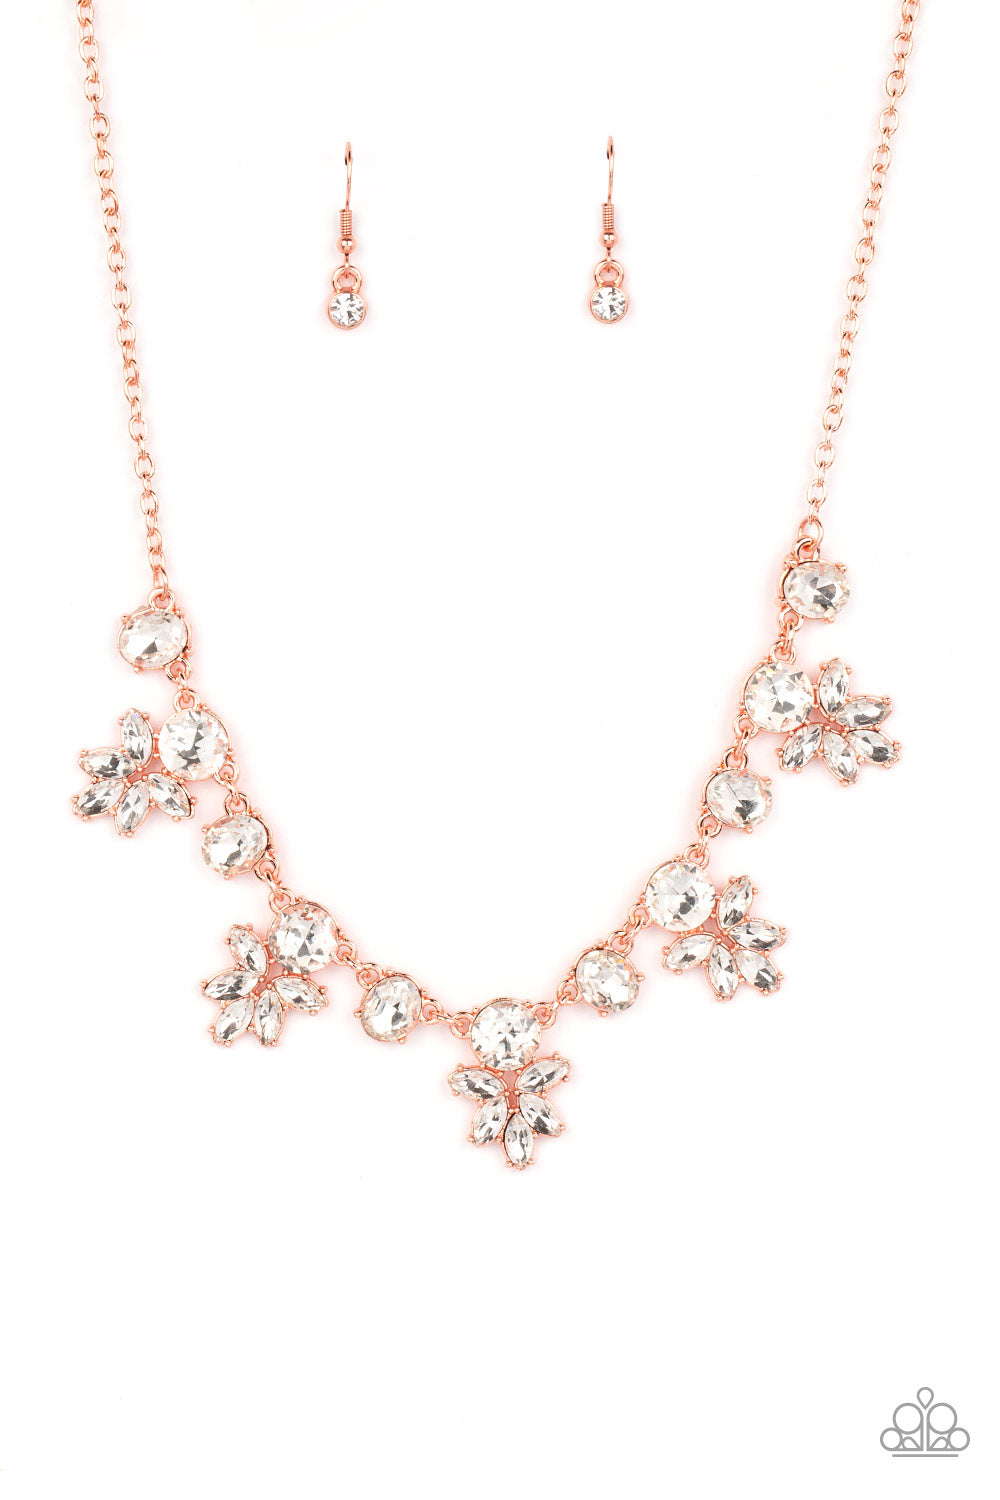 Prismatic Proposal Necklace (White, Copper, Silver)